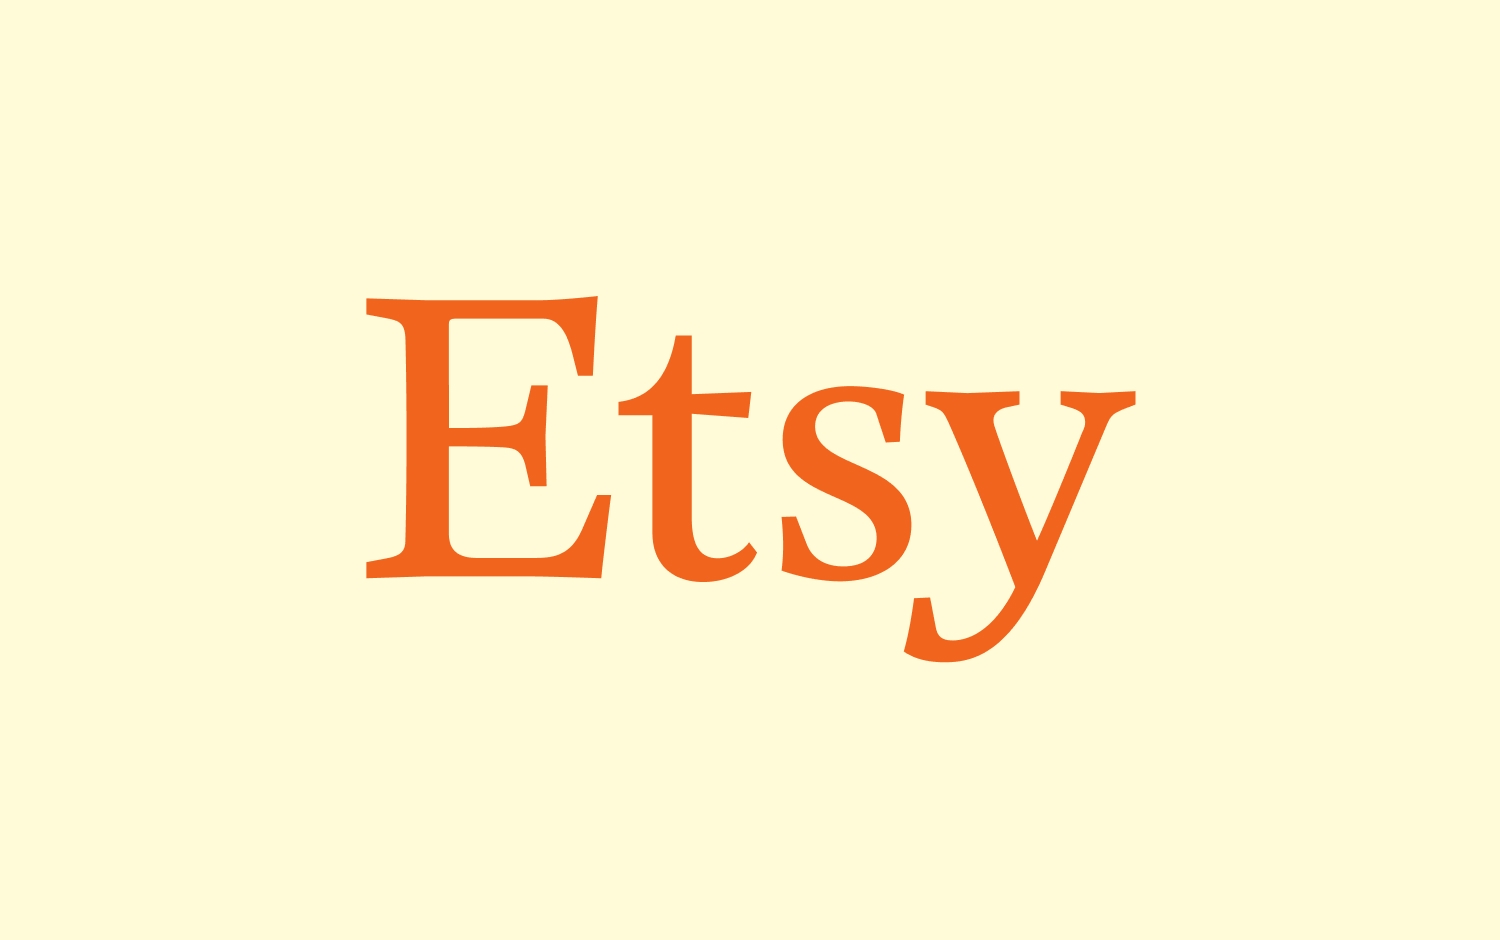 Etsy-Logo mit orangefarbener Schrift auf cremefarbenem Hintergrund